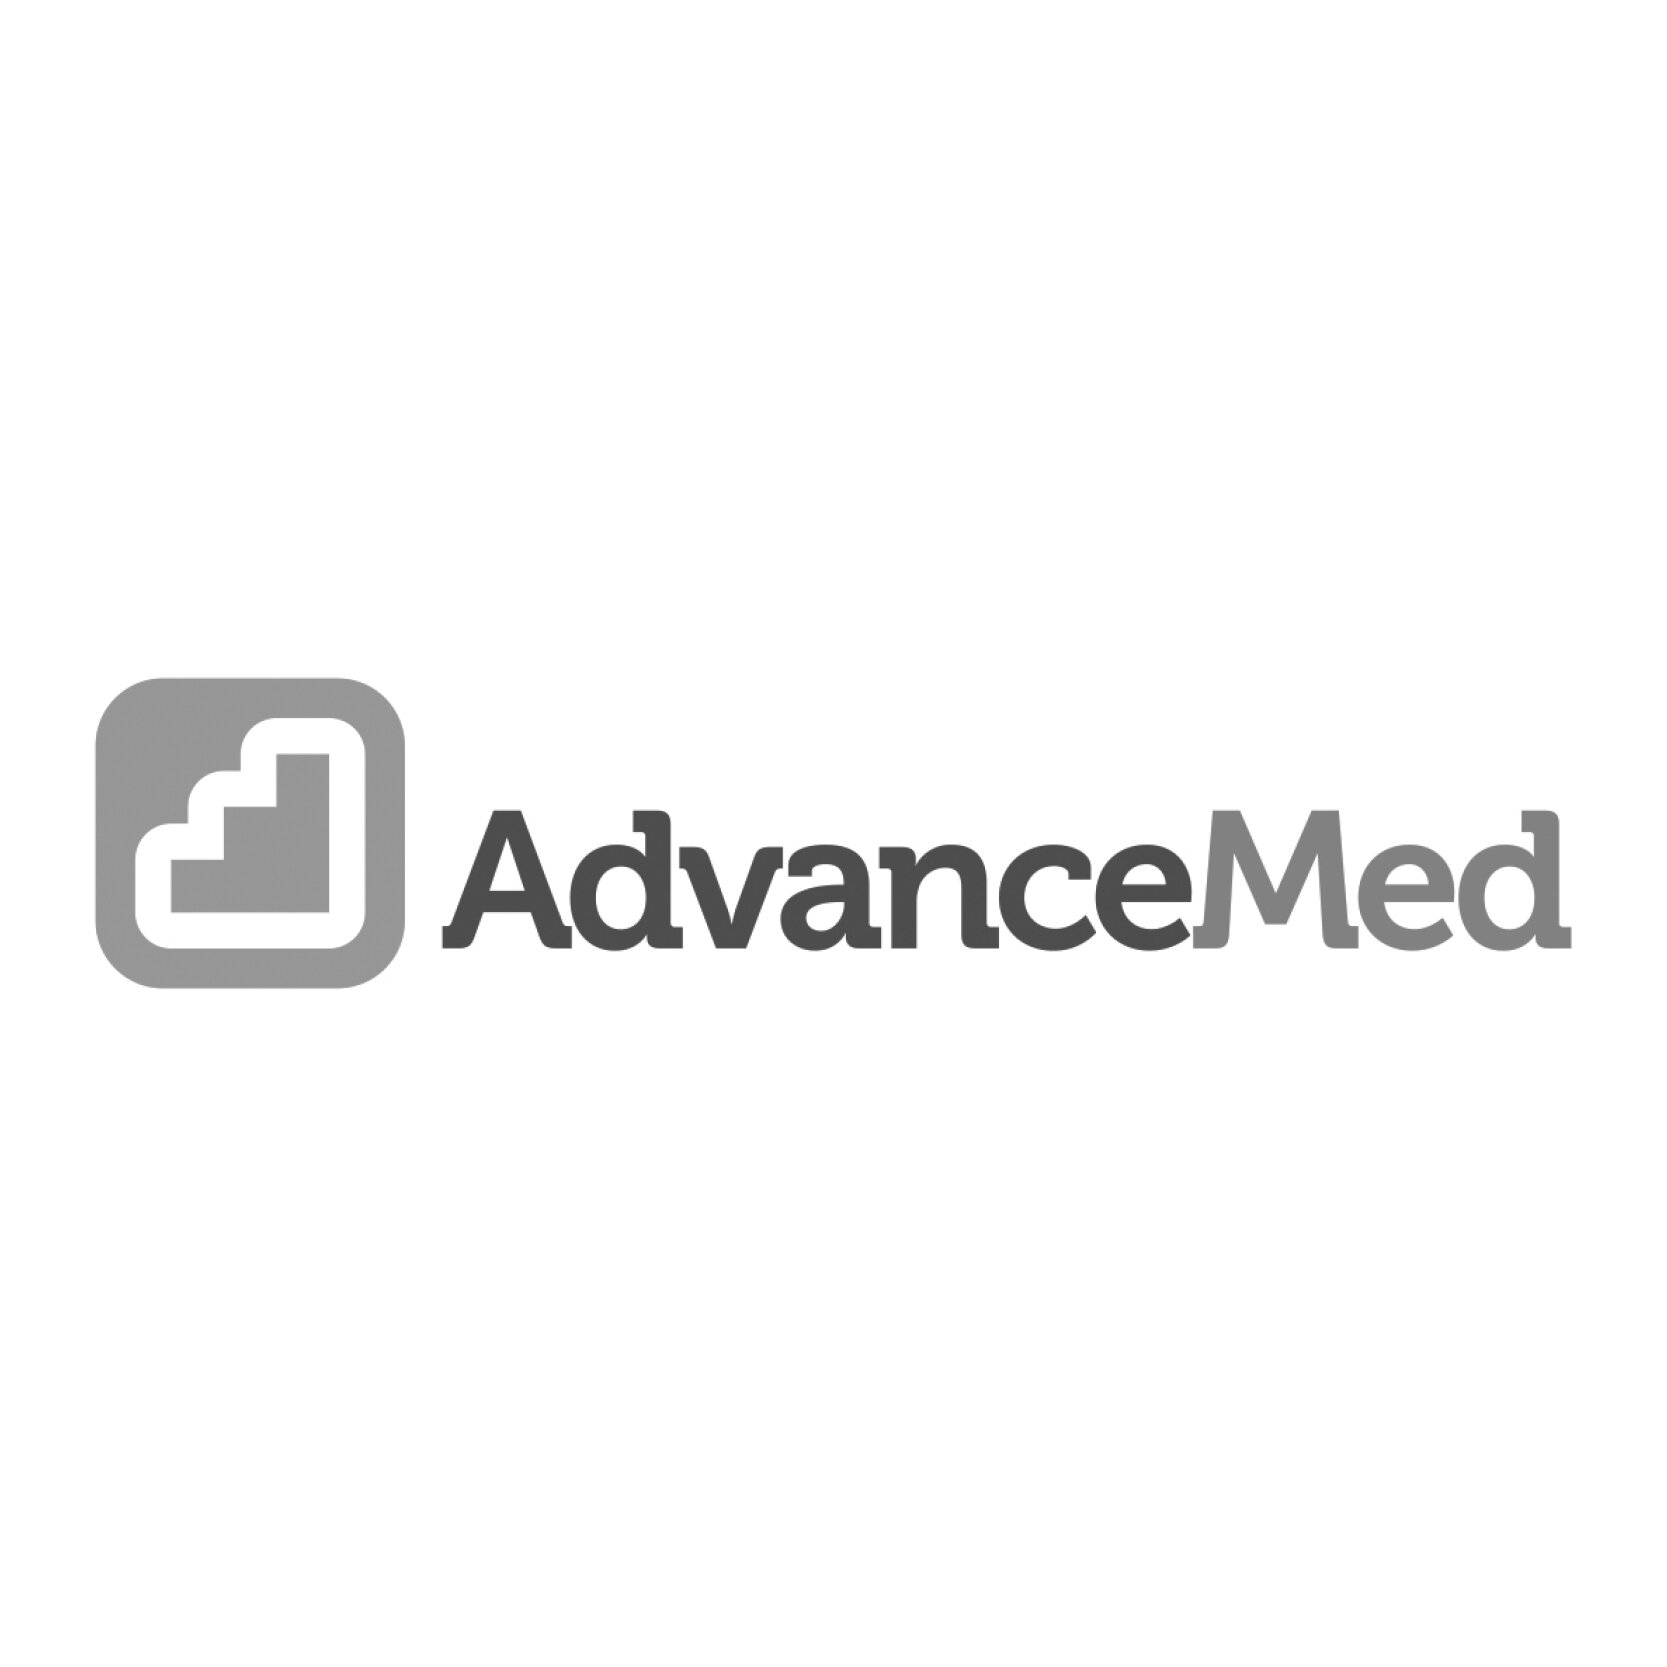 Advance Med (Copy)